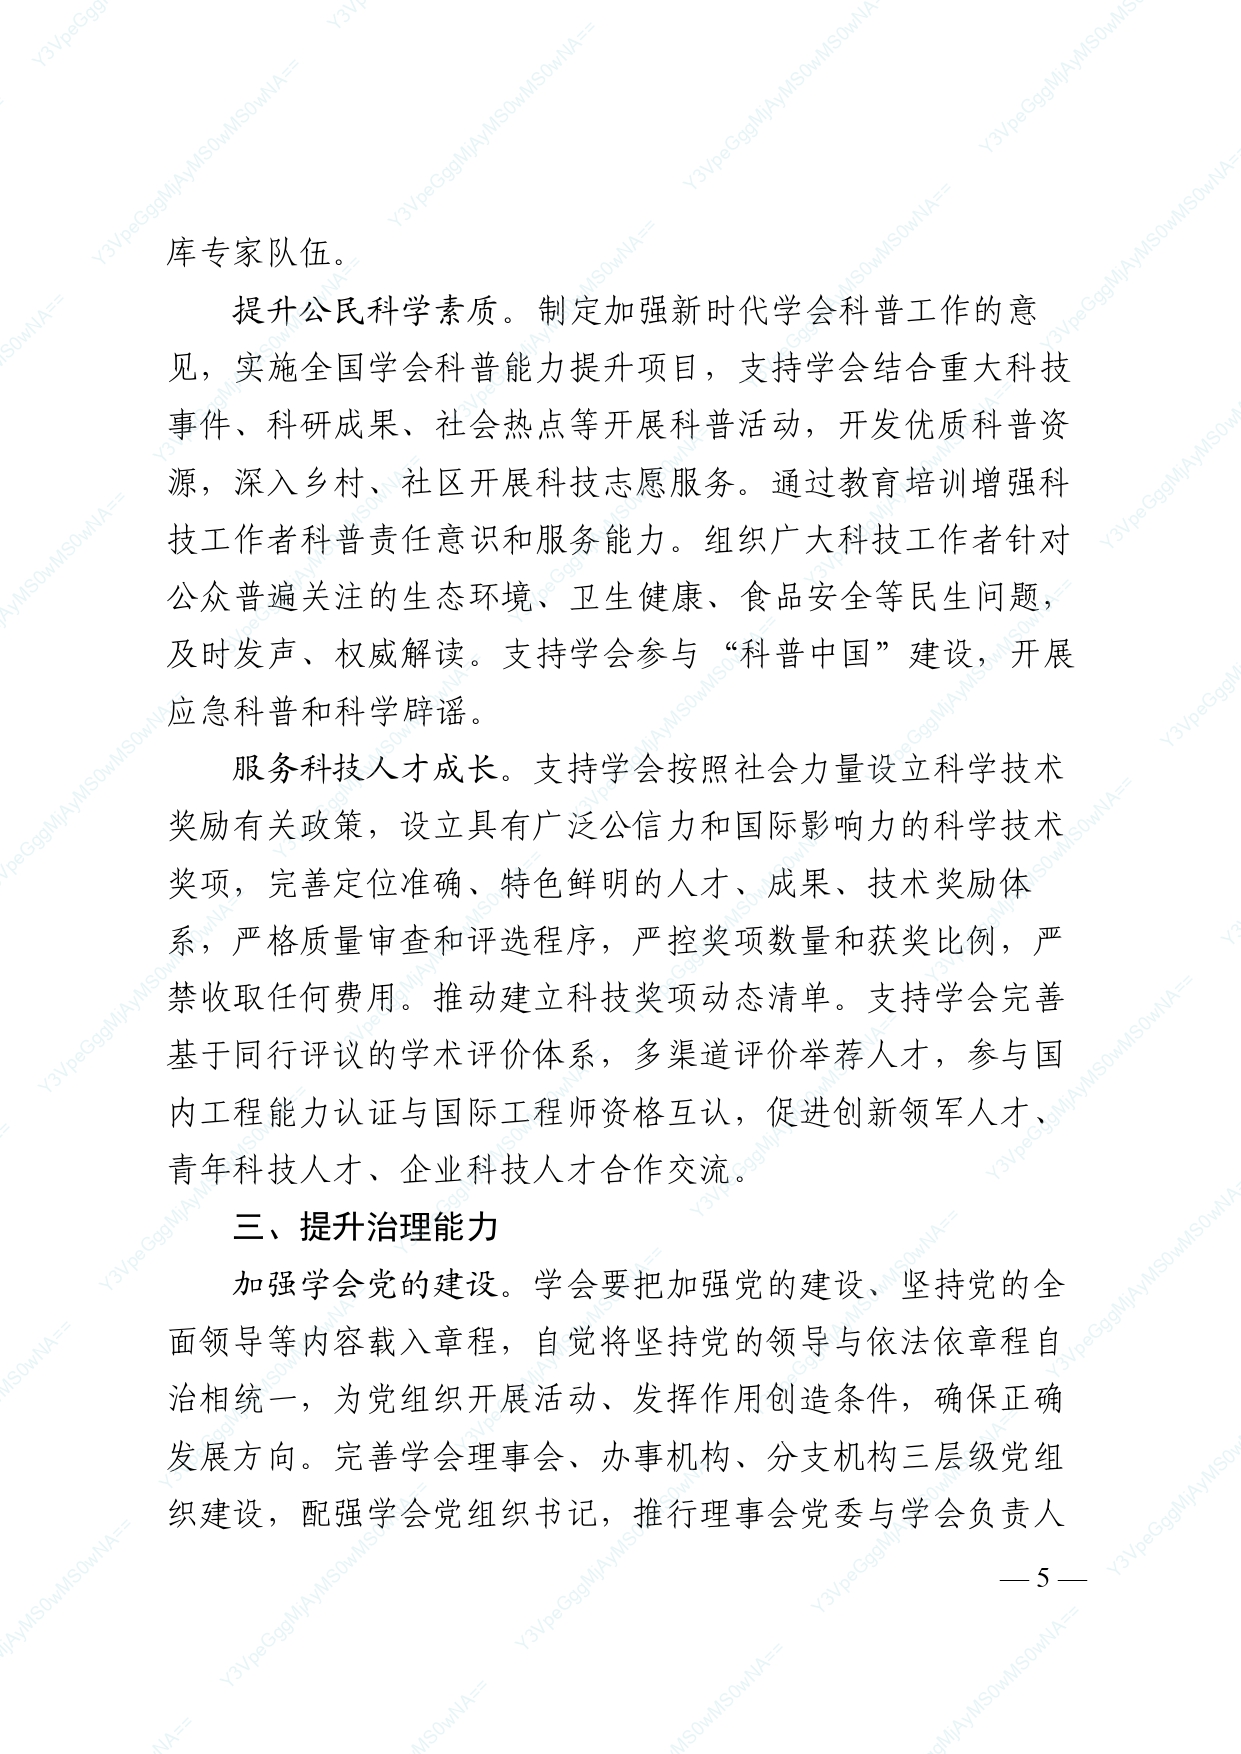 中国科协 民政部印发《关于进一步推动中国科协学会创新发展的意见》的通知_page-0005.jpg